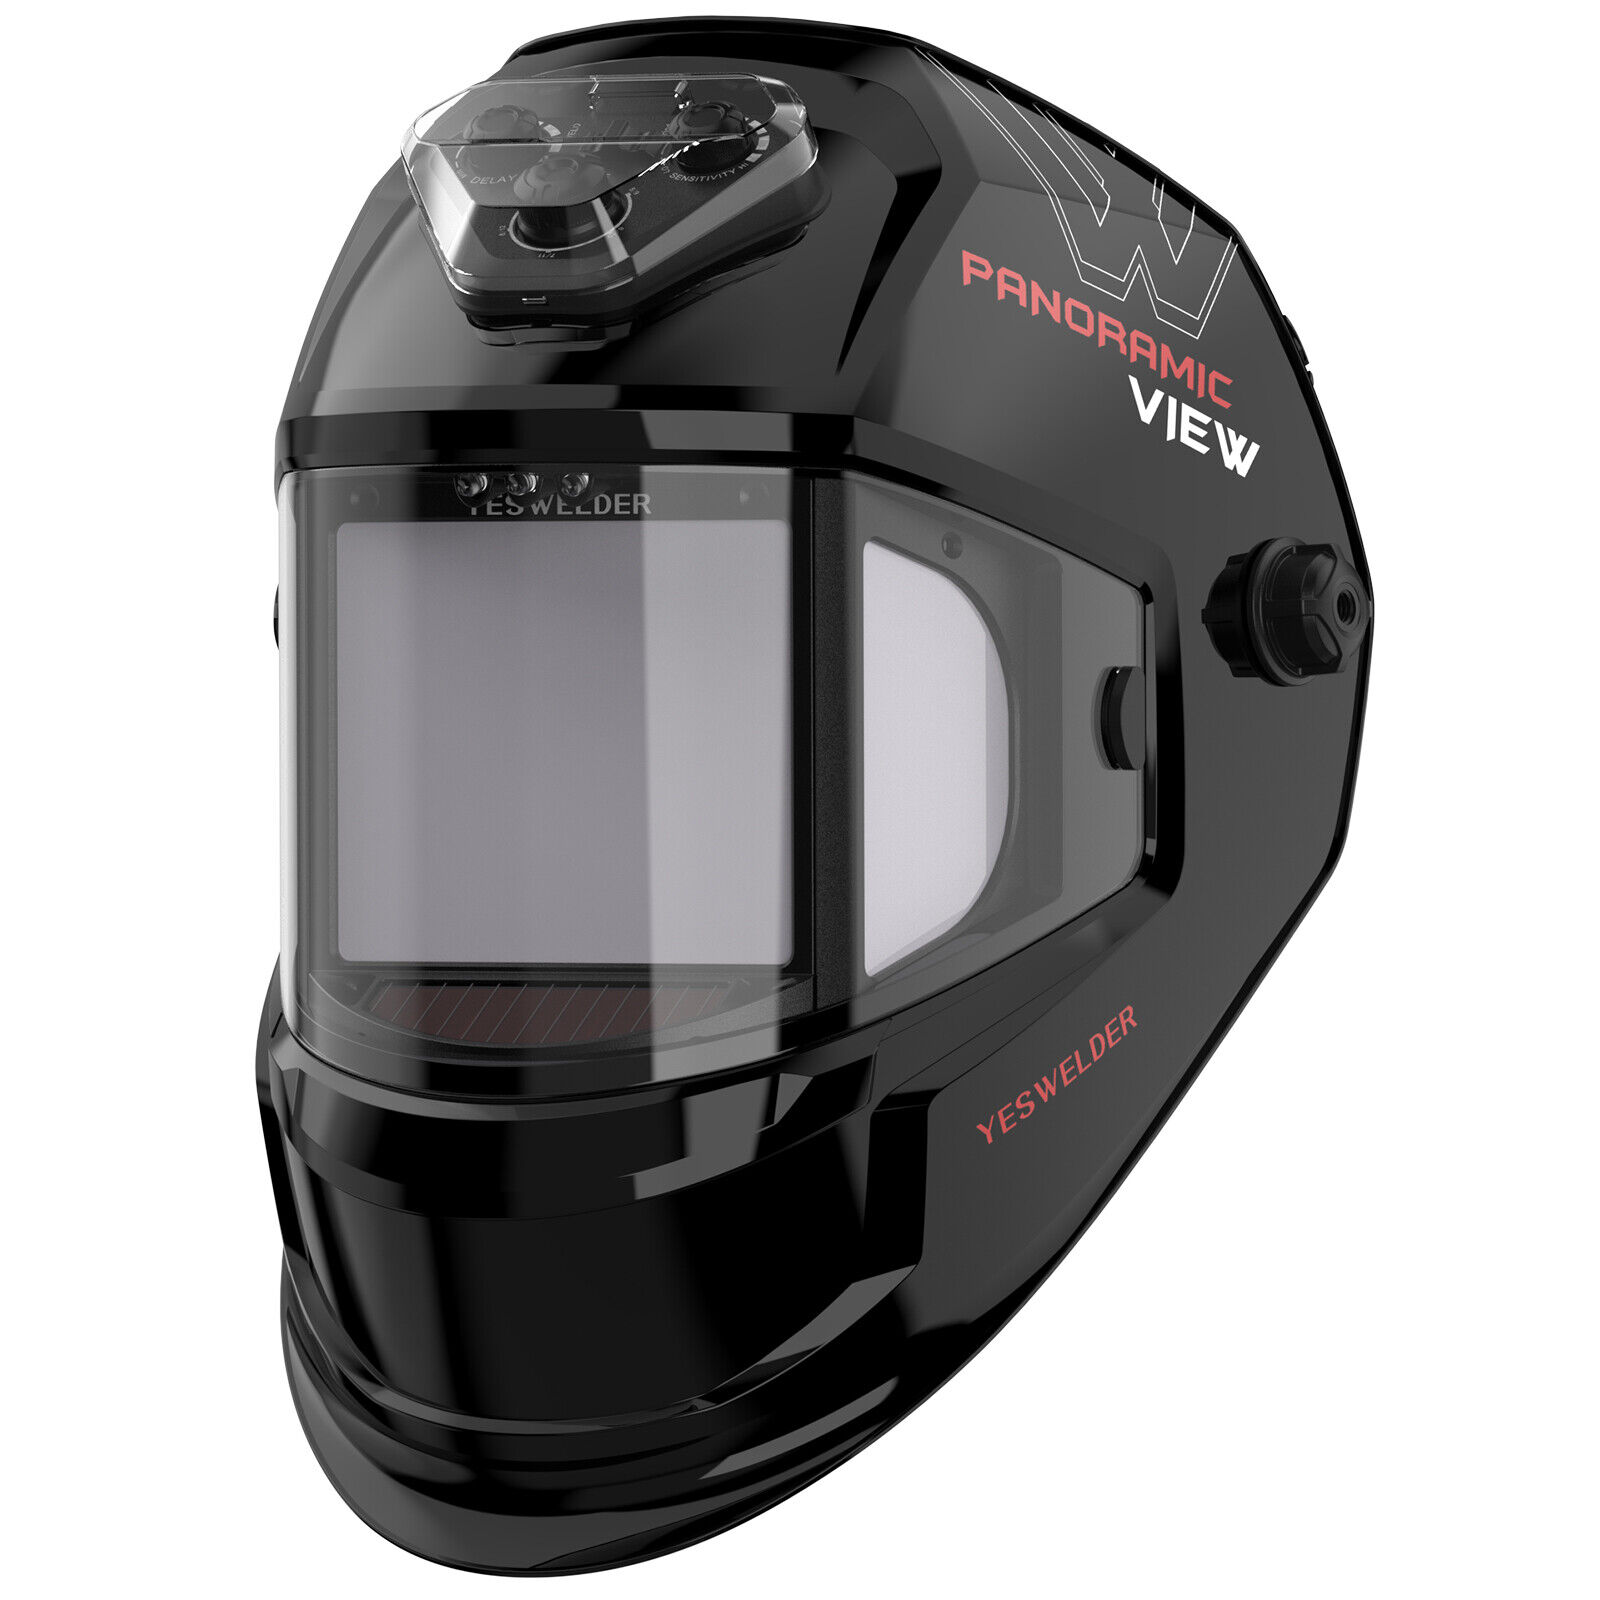 Panoramic View Auto Darkening Welding Helmet, LED Lighting & Type-C Charging